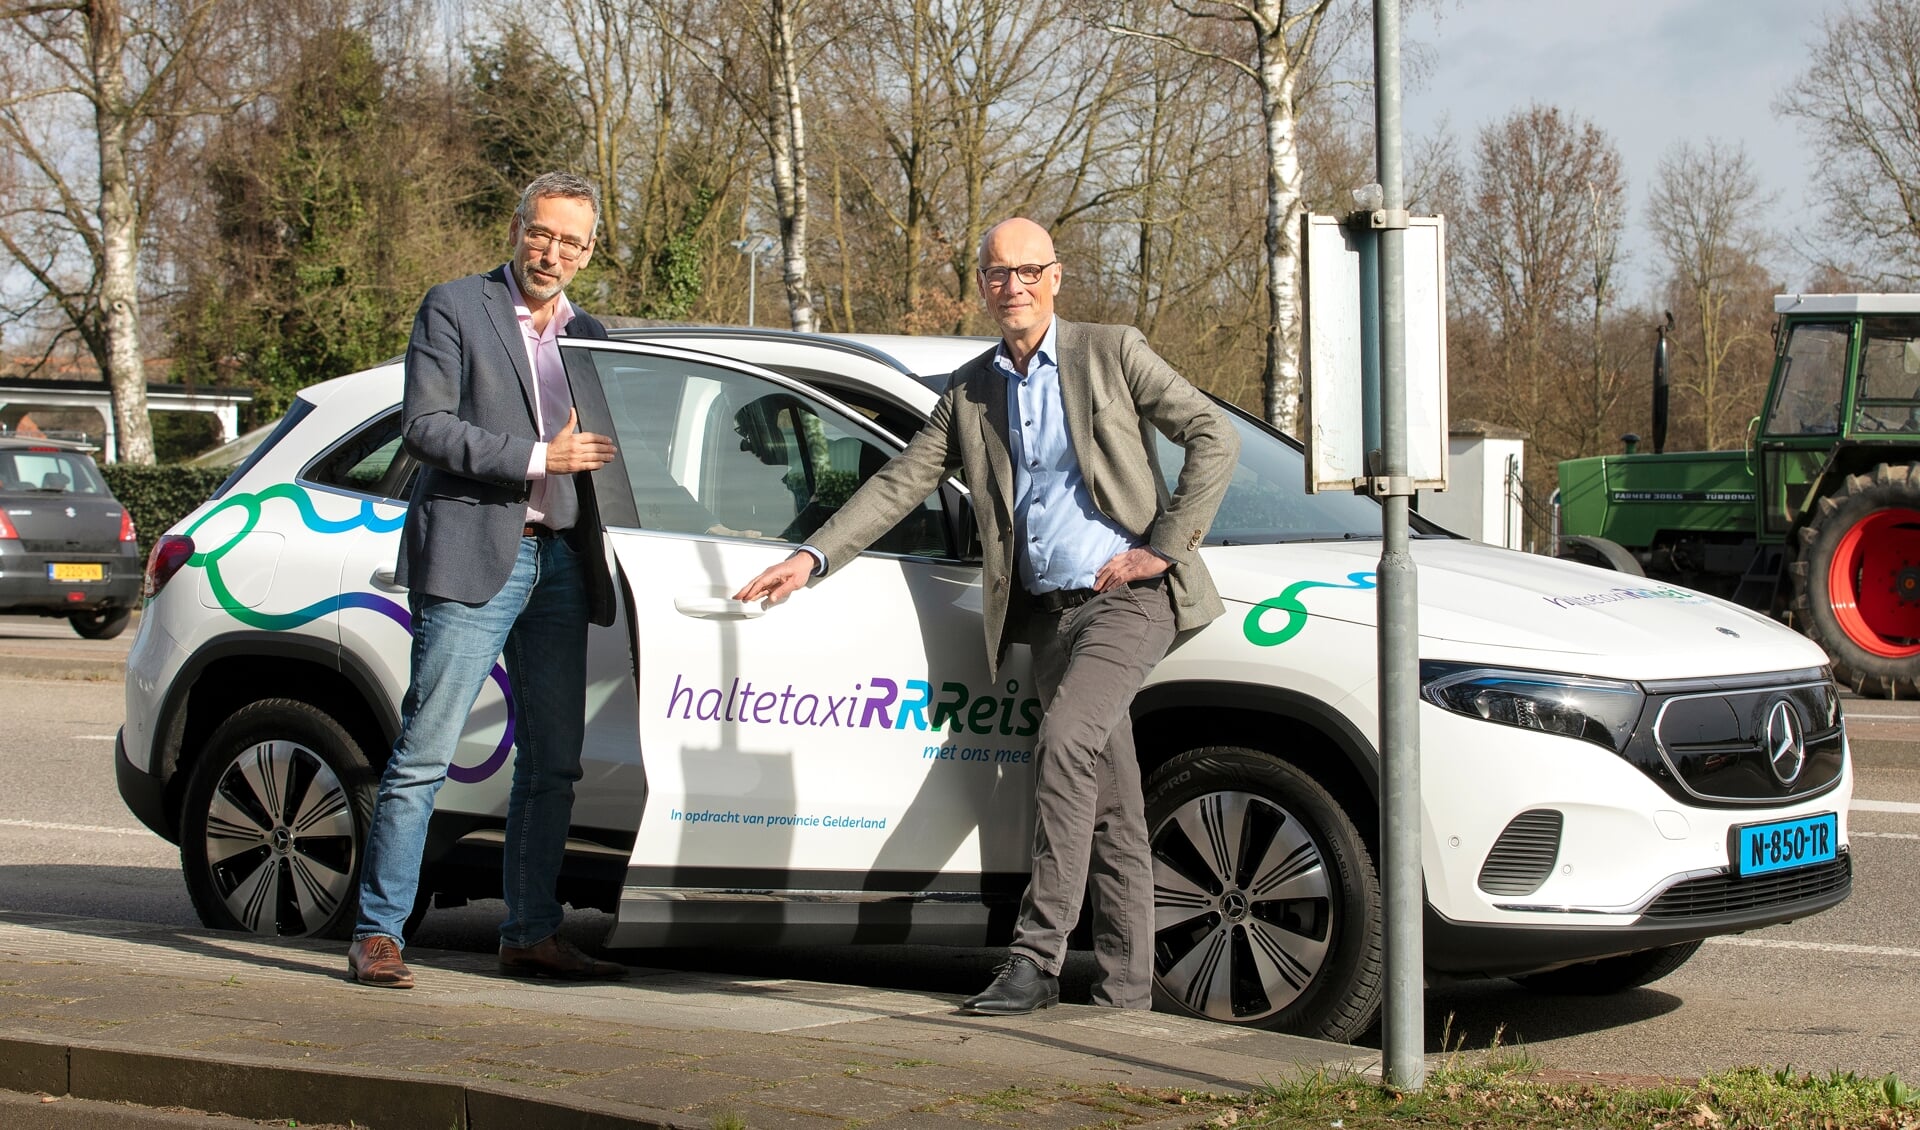 Gedeputeerde Jan van der Meer (links) en Paul Pietersen van Qarin, het bedrijf dat de taxi's inzet.